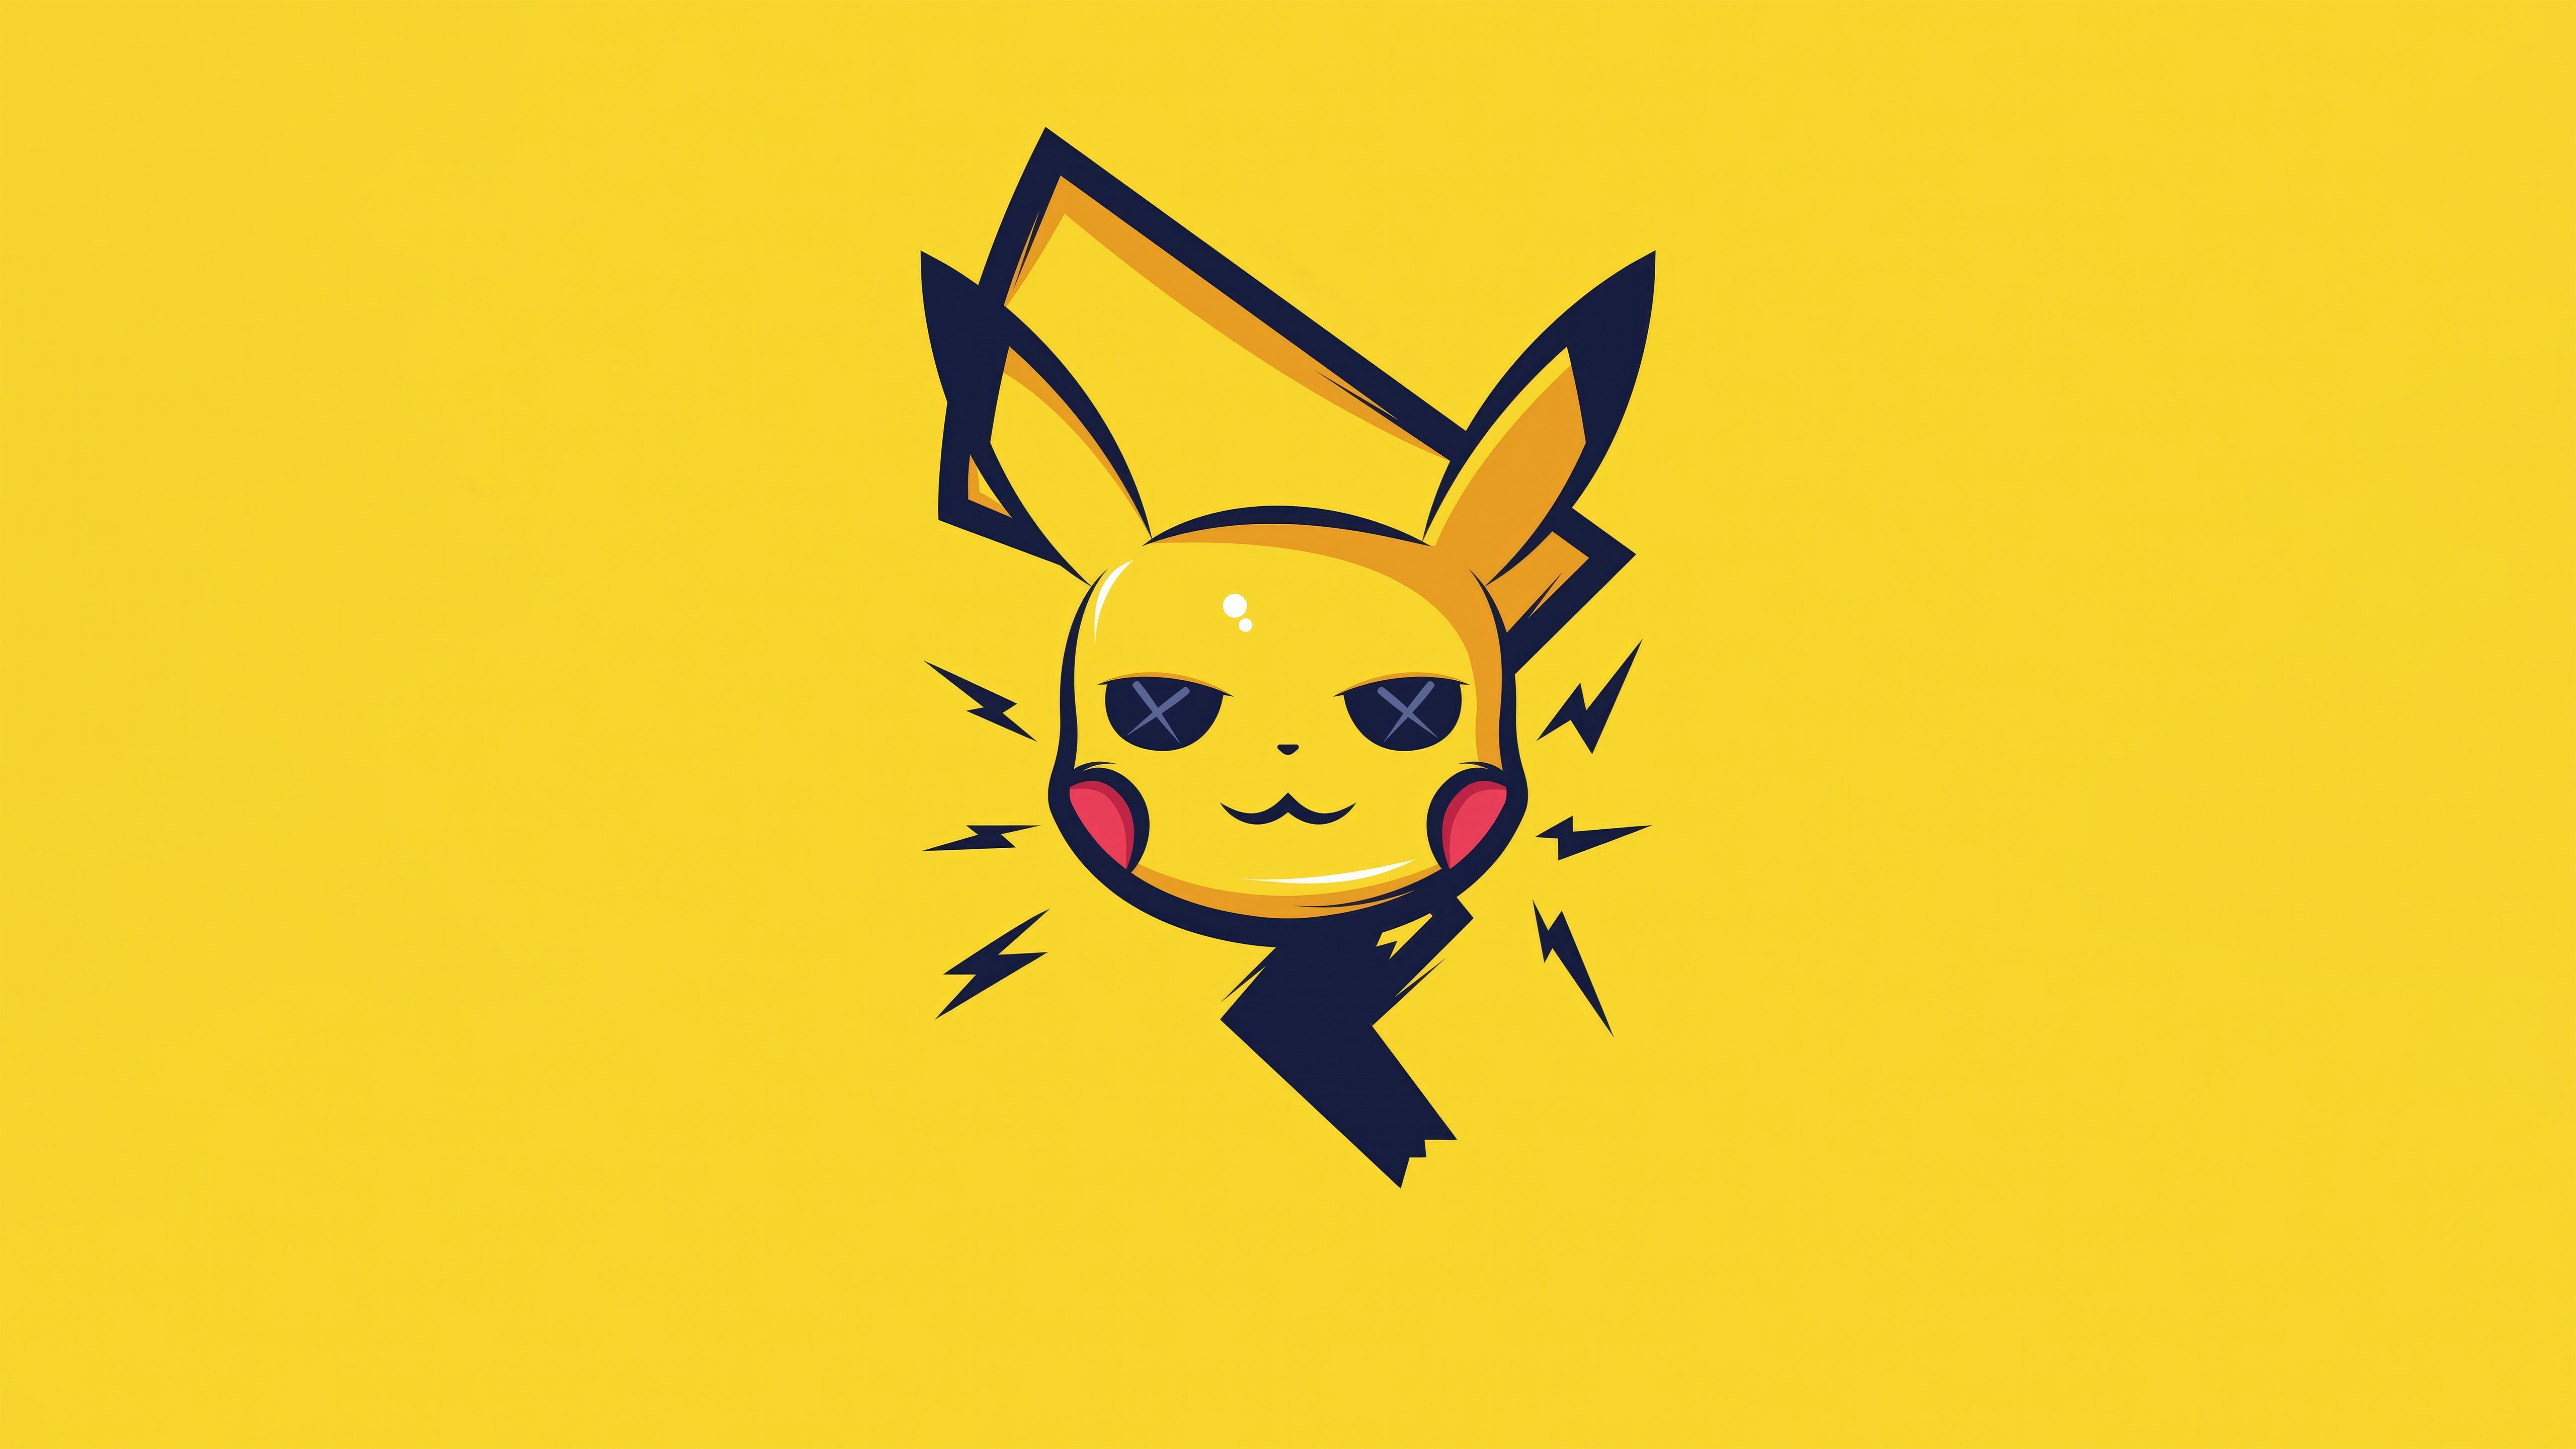 Fondos de pantalla Pikachu abstracto minimalista